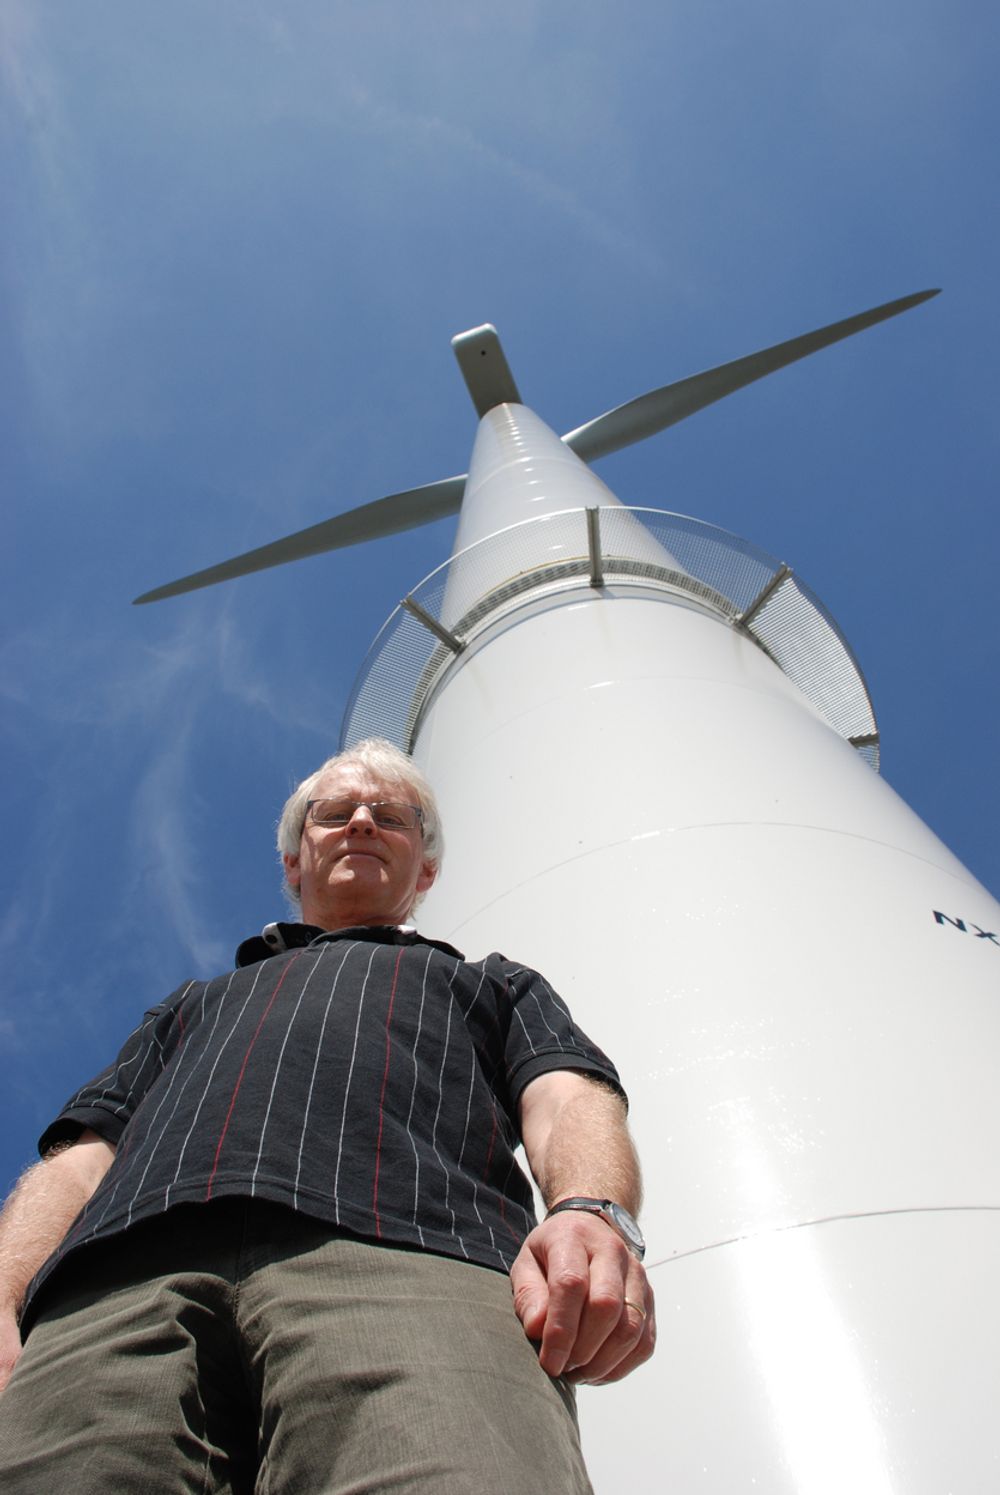 VIL TIL NORGE: Rabbalshede kraft har 500 vindmøller i prosjektering i Sverige, og rett kurs mot den svenske børsen. Nå har administrerende direktør begynt jakten på egnede arealer i Norge.